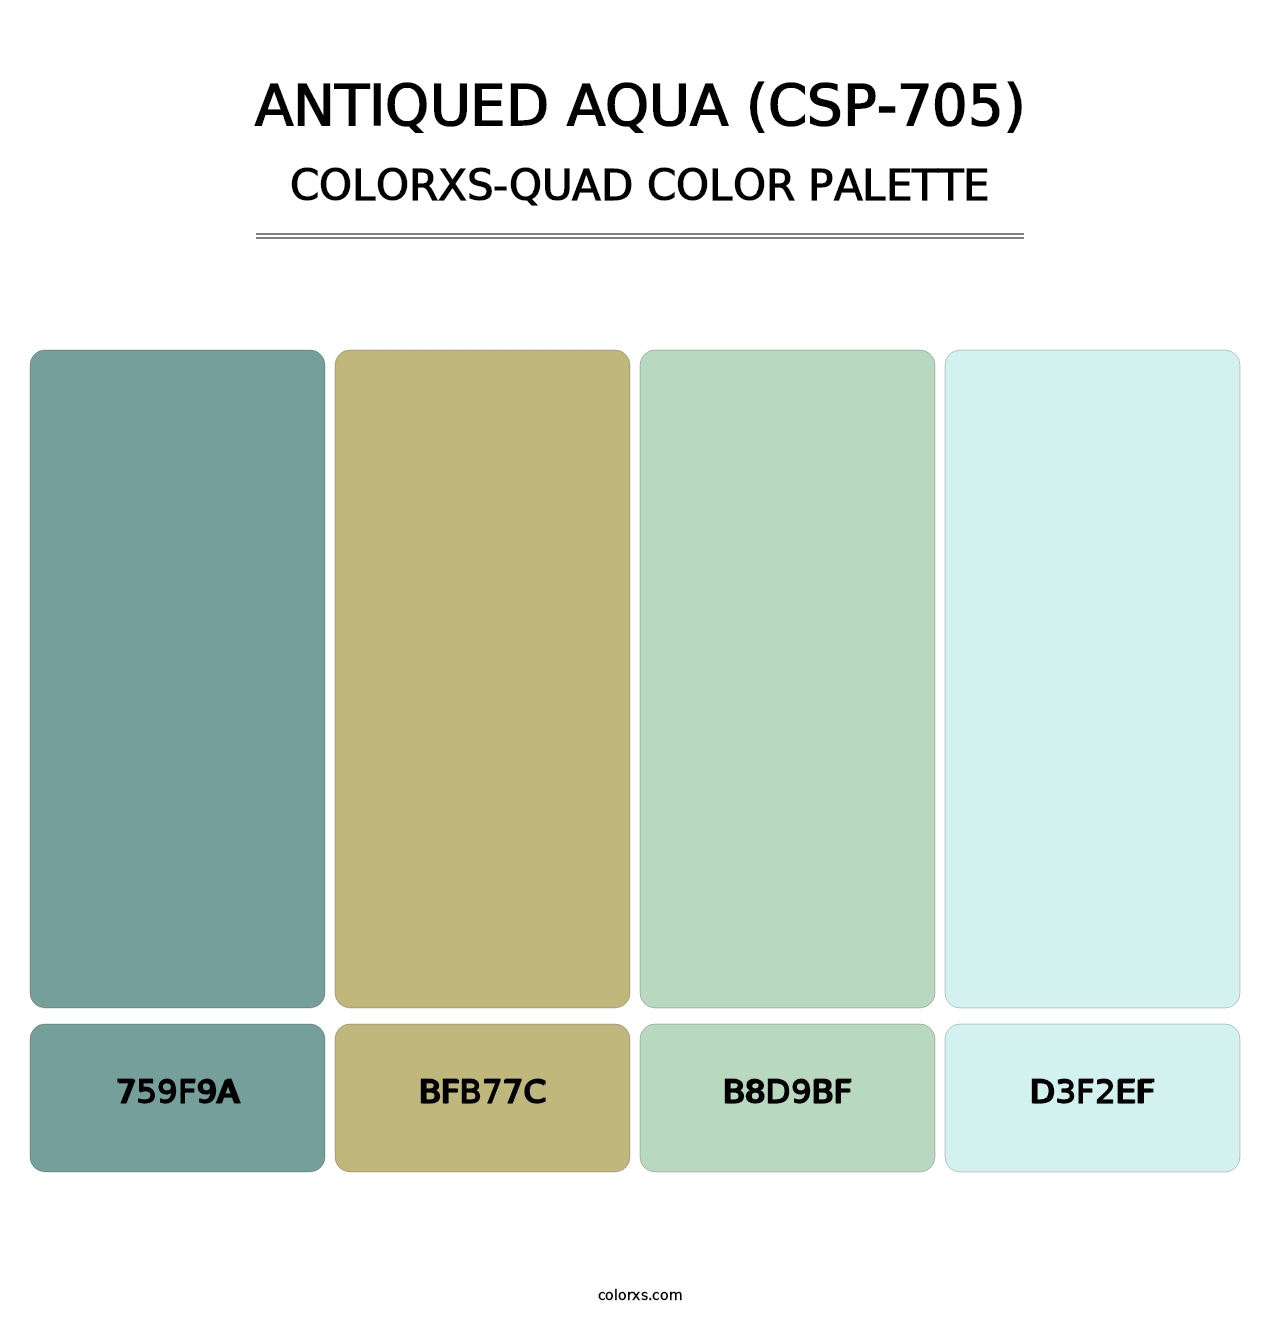 Antiqued Aqua (CSP-705) - Colorxs Quad Palette